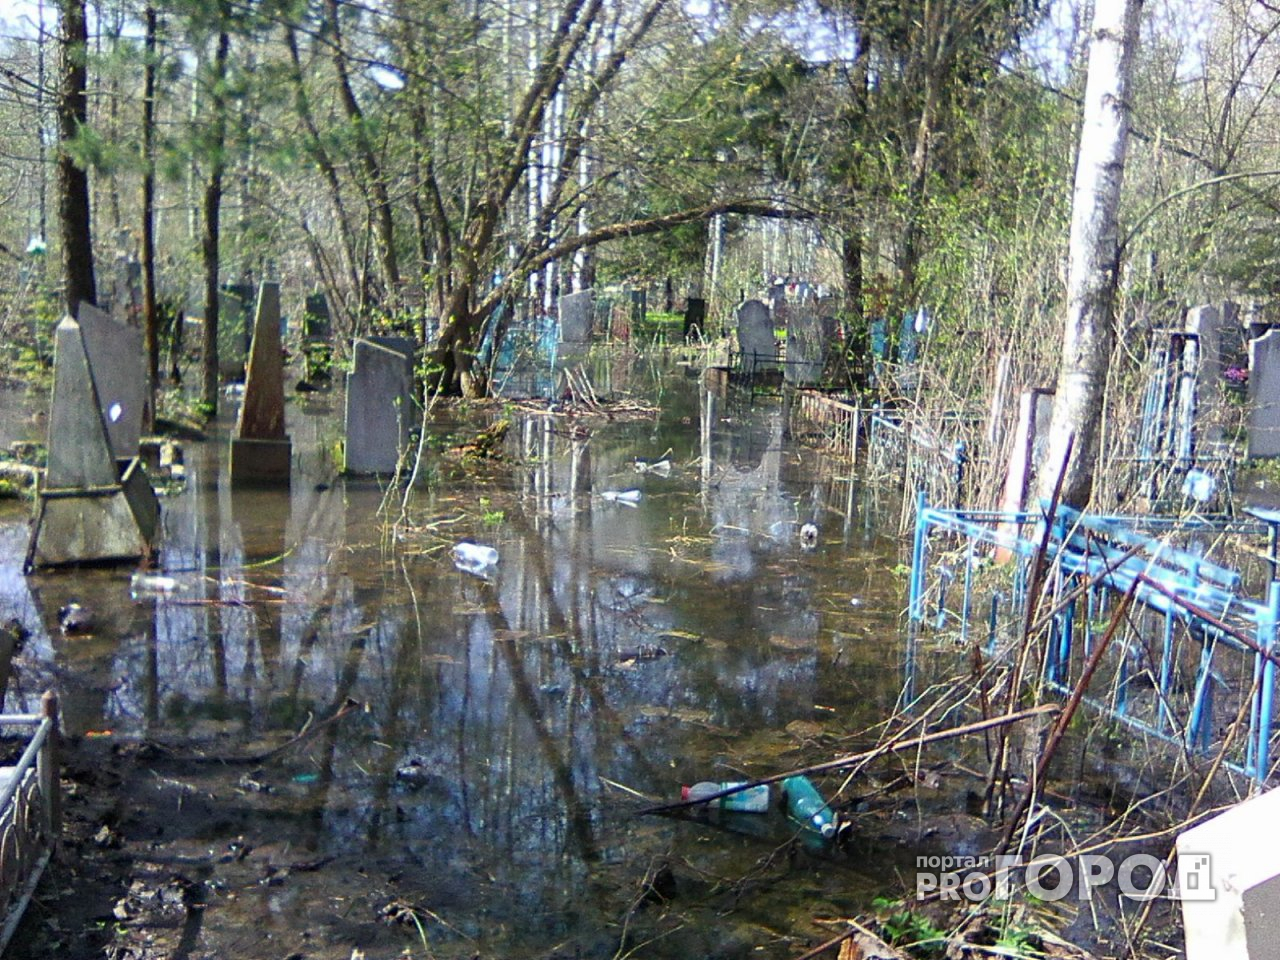 Вплавь до могил: В Ярославле ушли под воду два главных кладбища